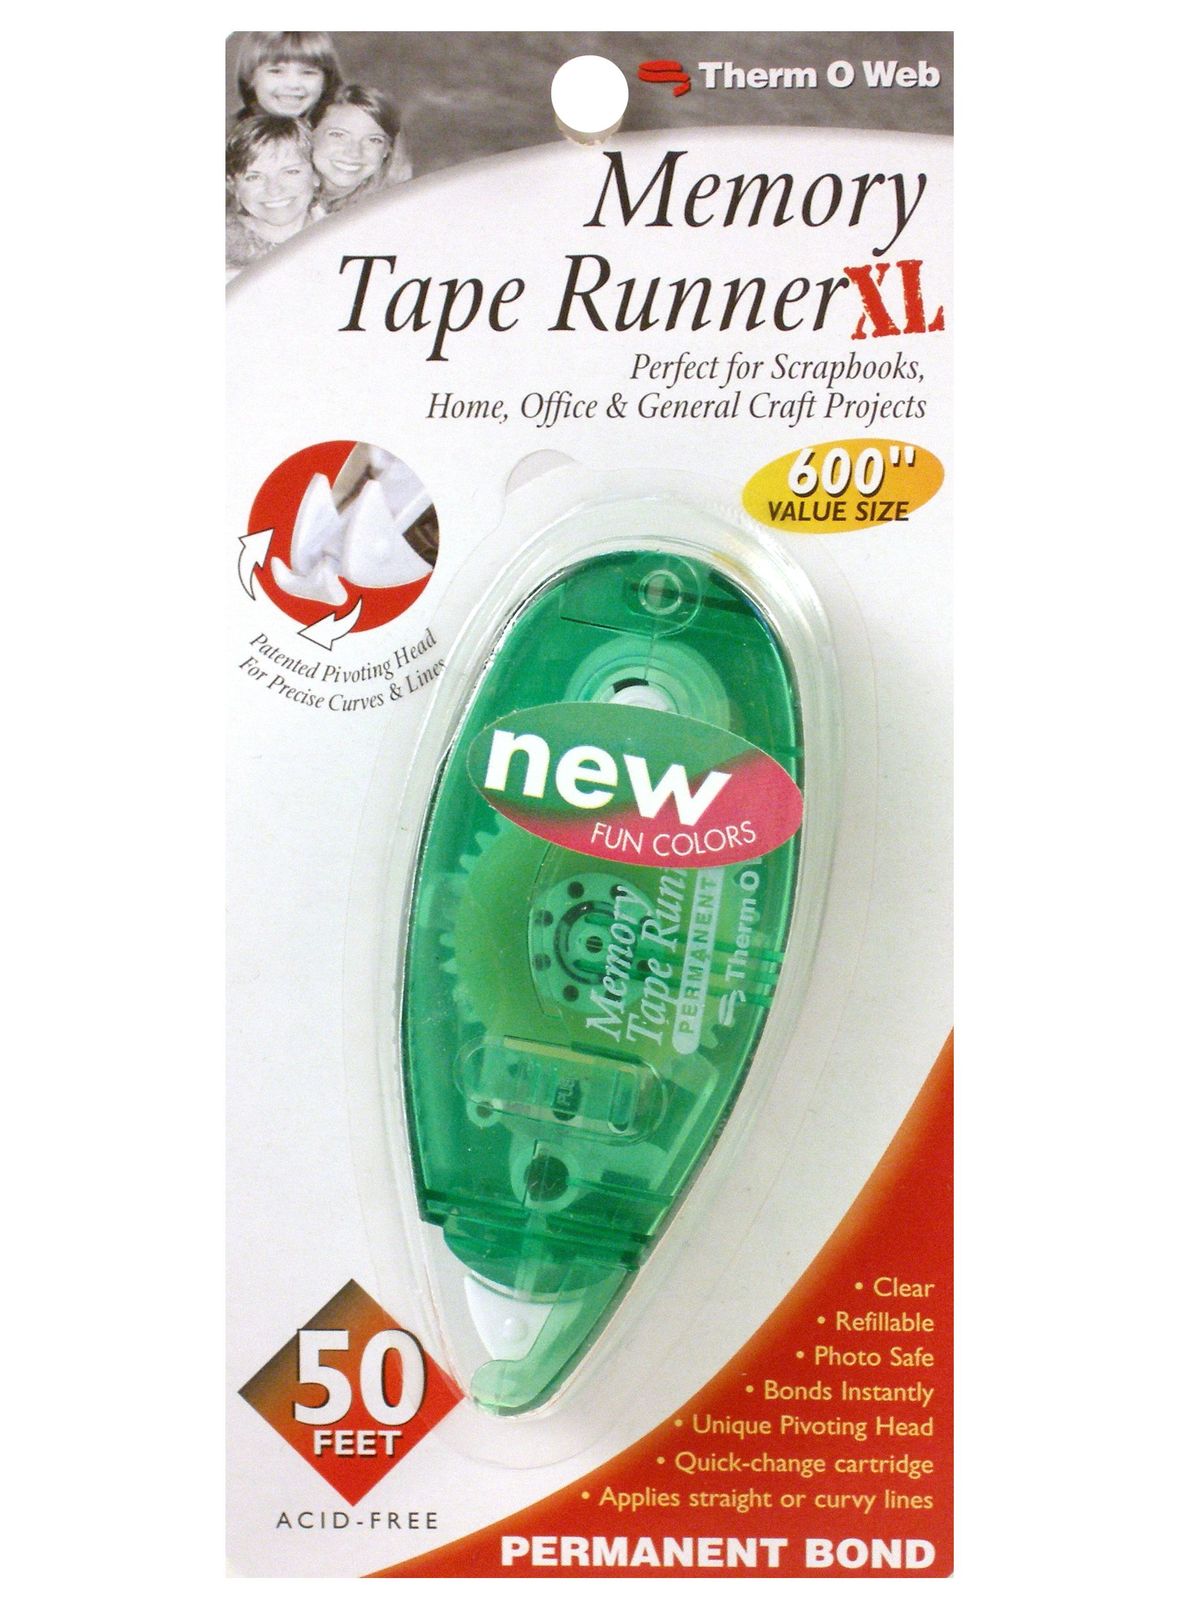 Memory Tape Runner Xl Tape Runner